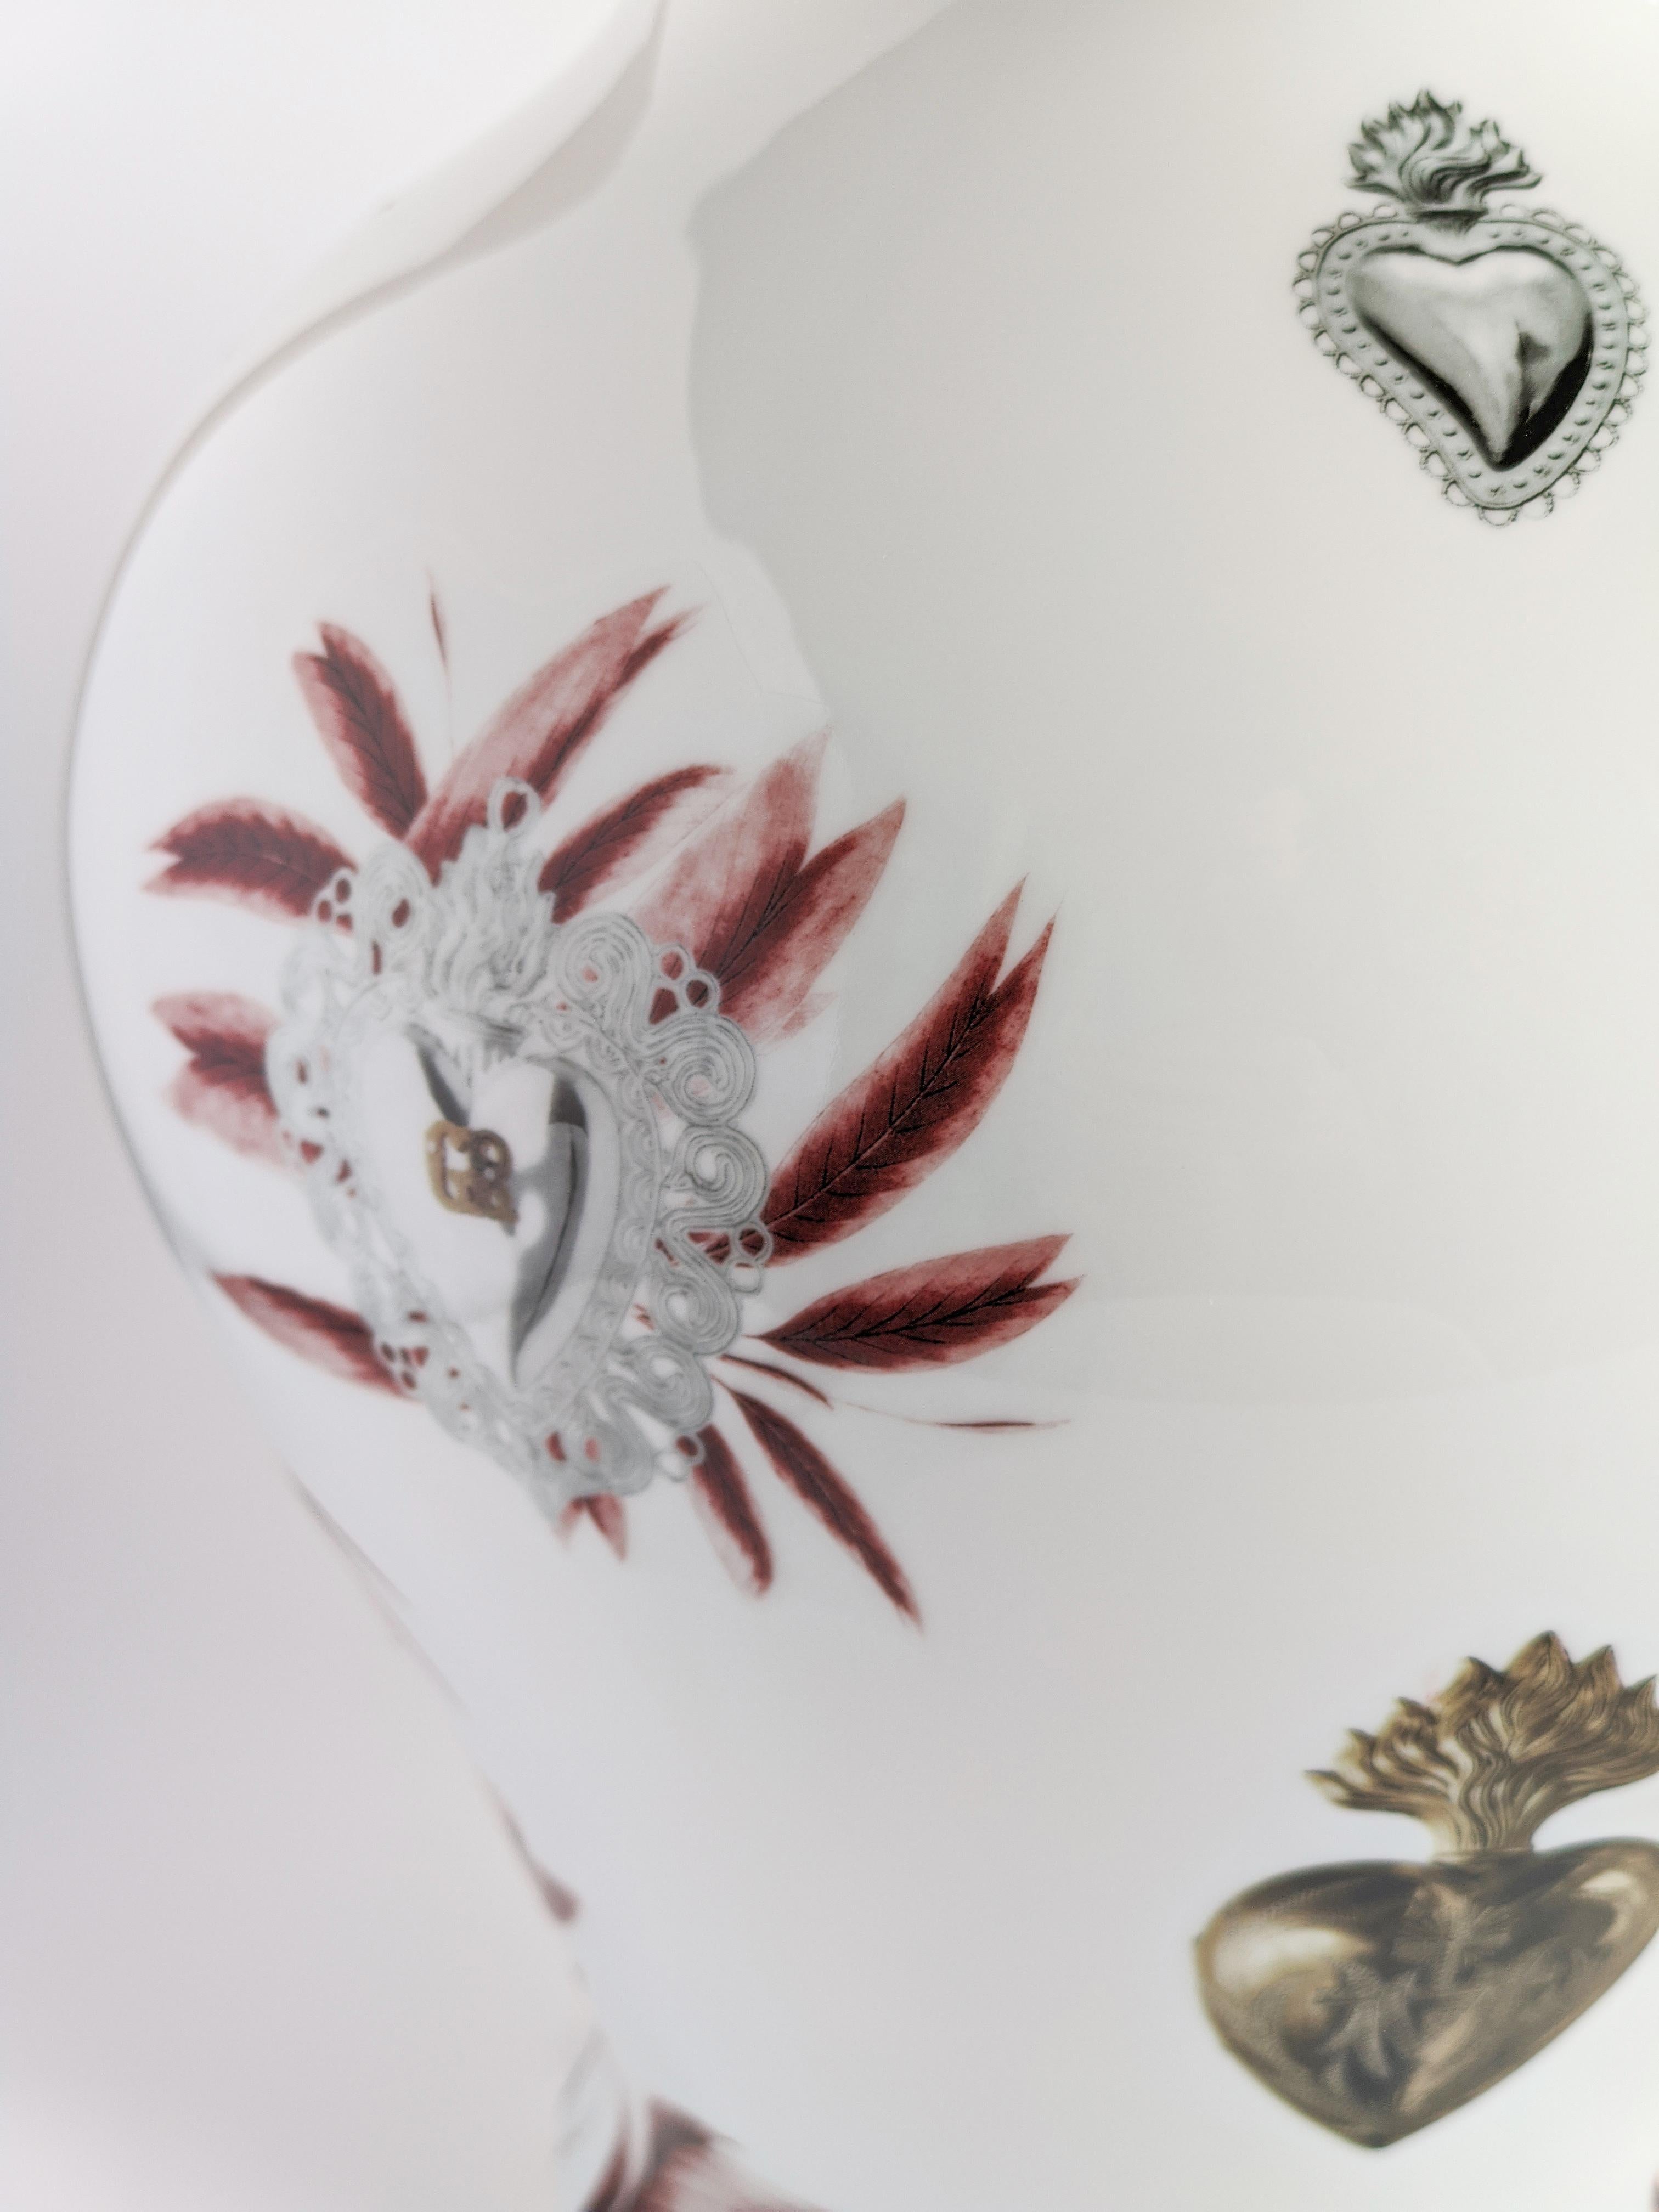 Ex Voto, Contemporary Porcelain Vase with Decorative Design by Vito Nesta In New Condition For Sale In Milano, Lombardia